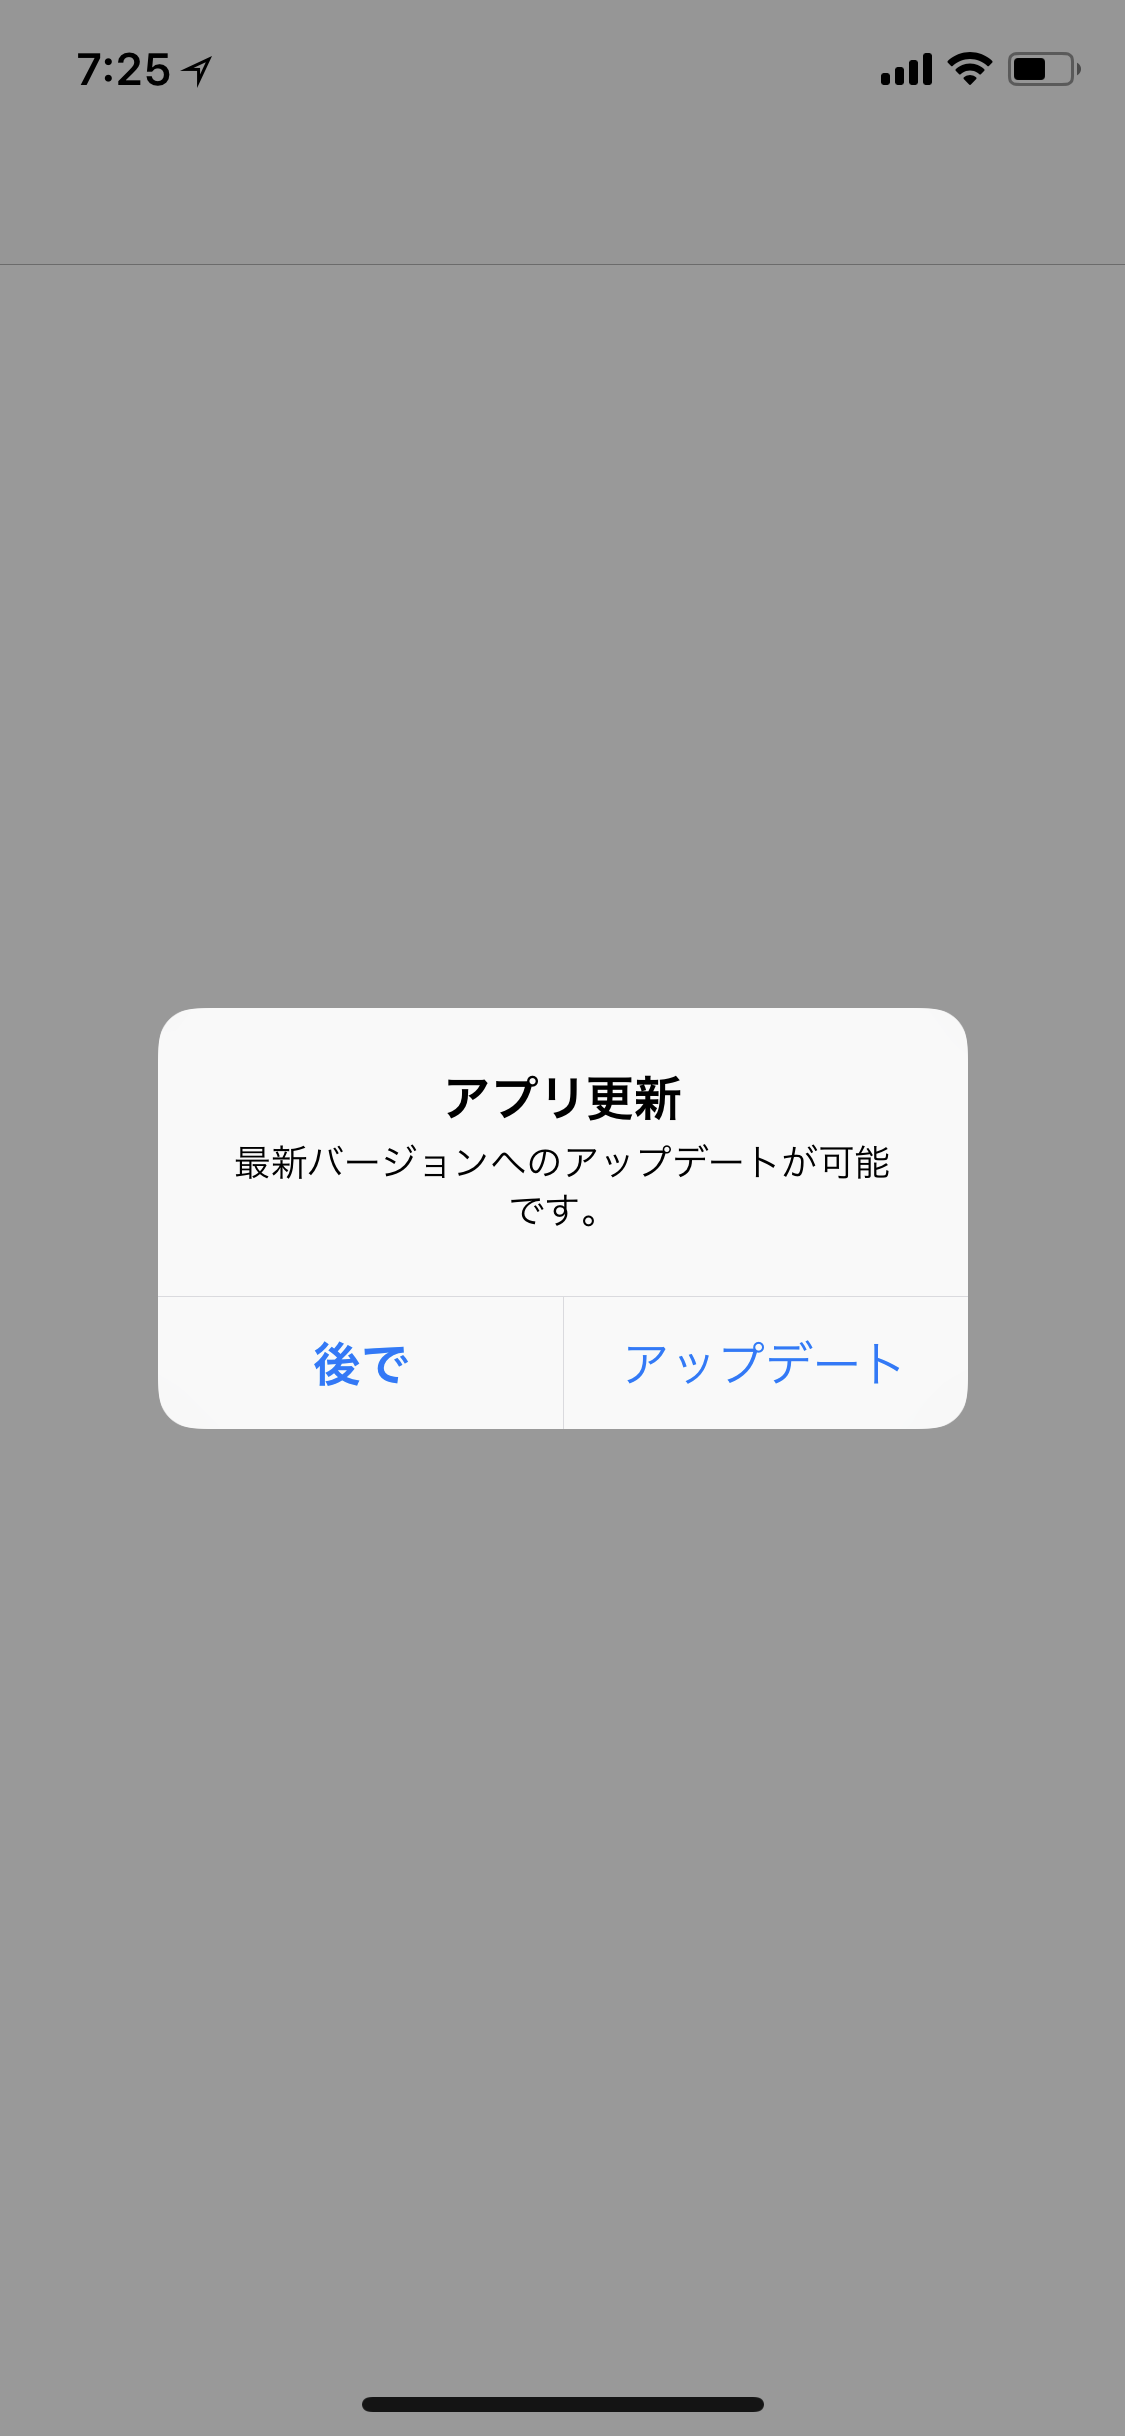 Suicaアプリアップデート